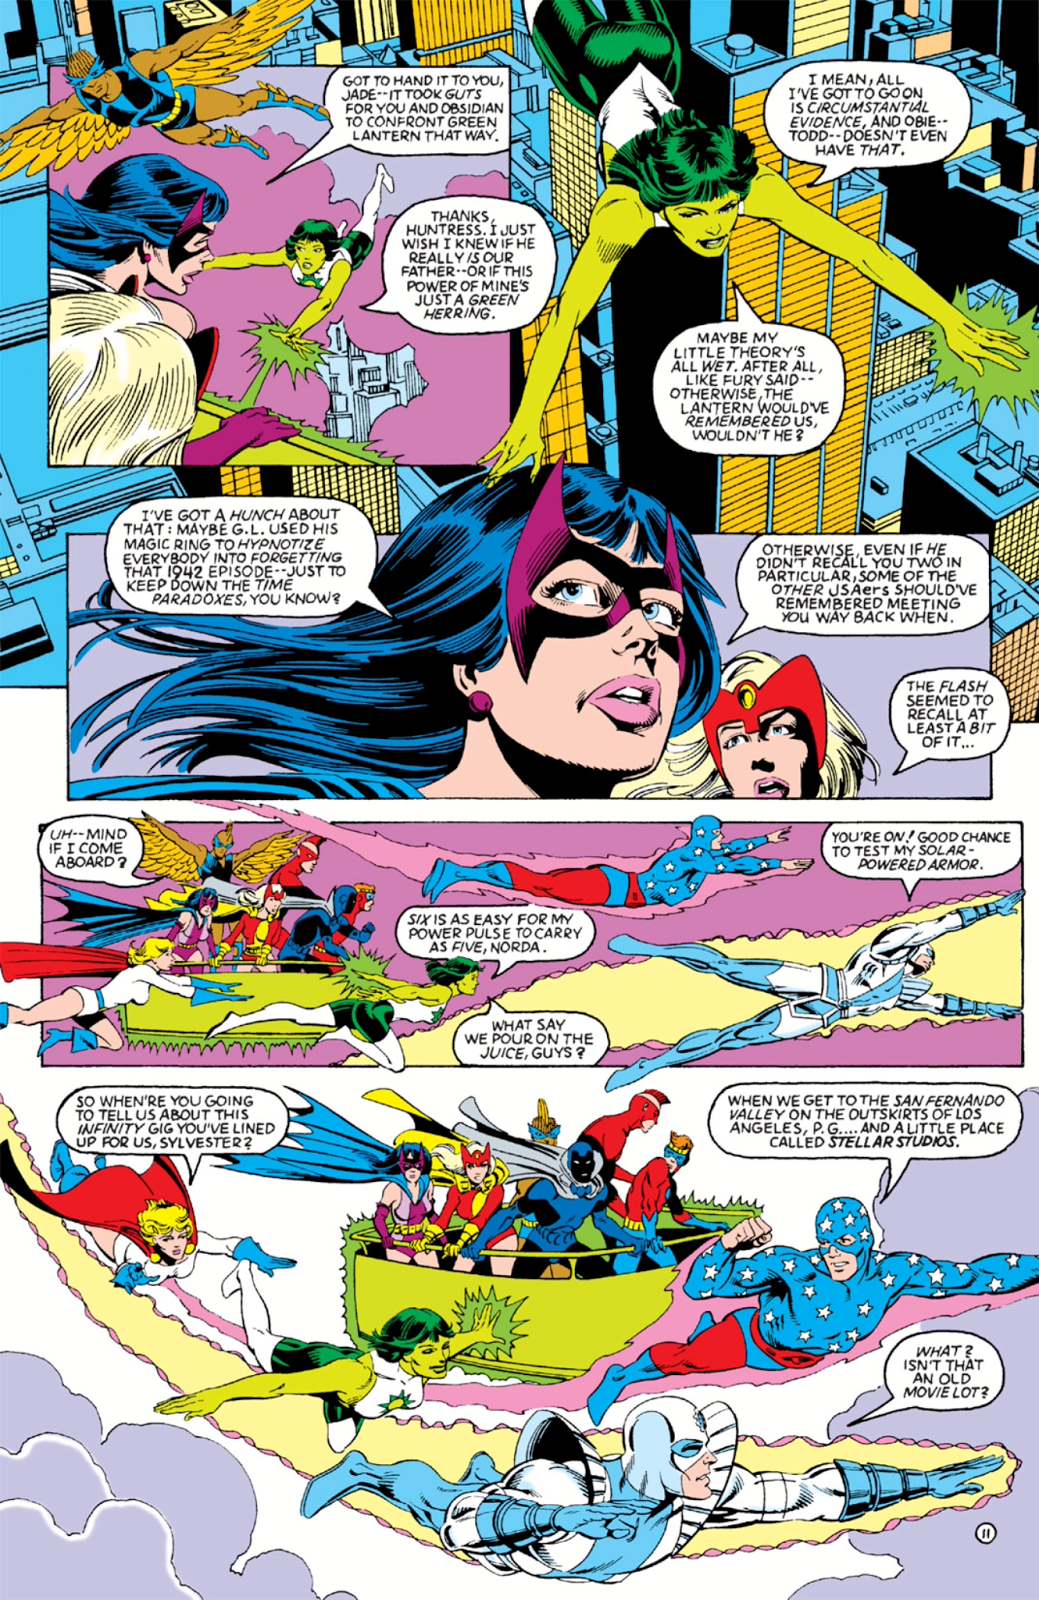 687 - Les comics que vous lisez en ce moment - Page 9 Infinity-Inc-11